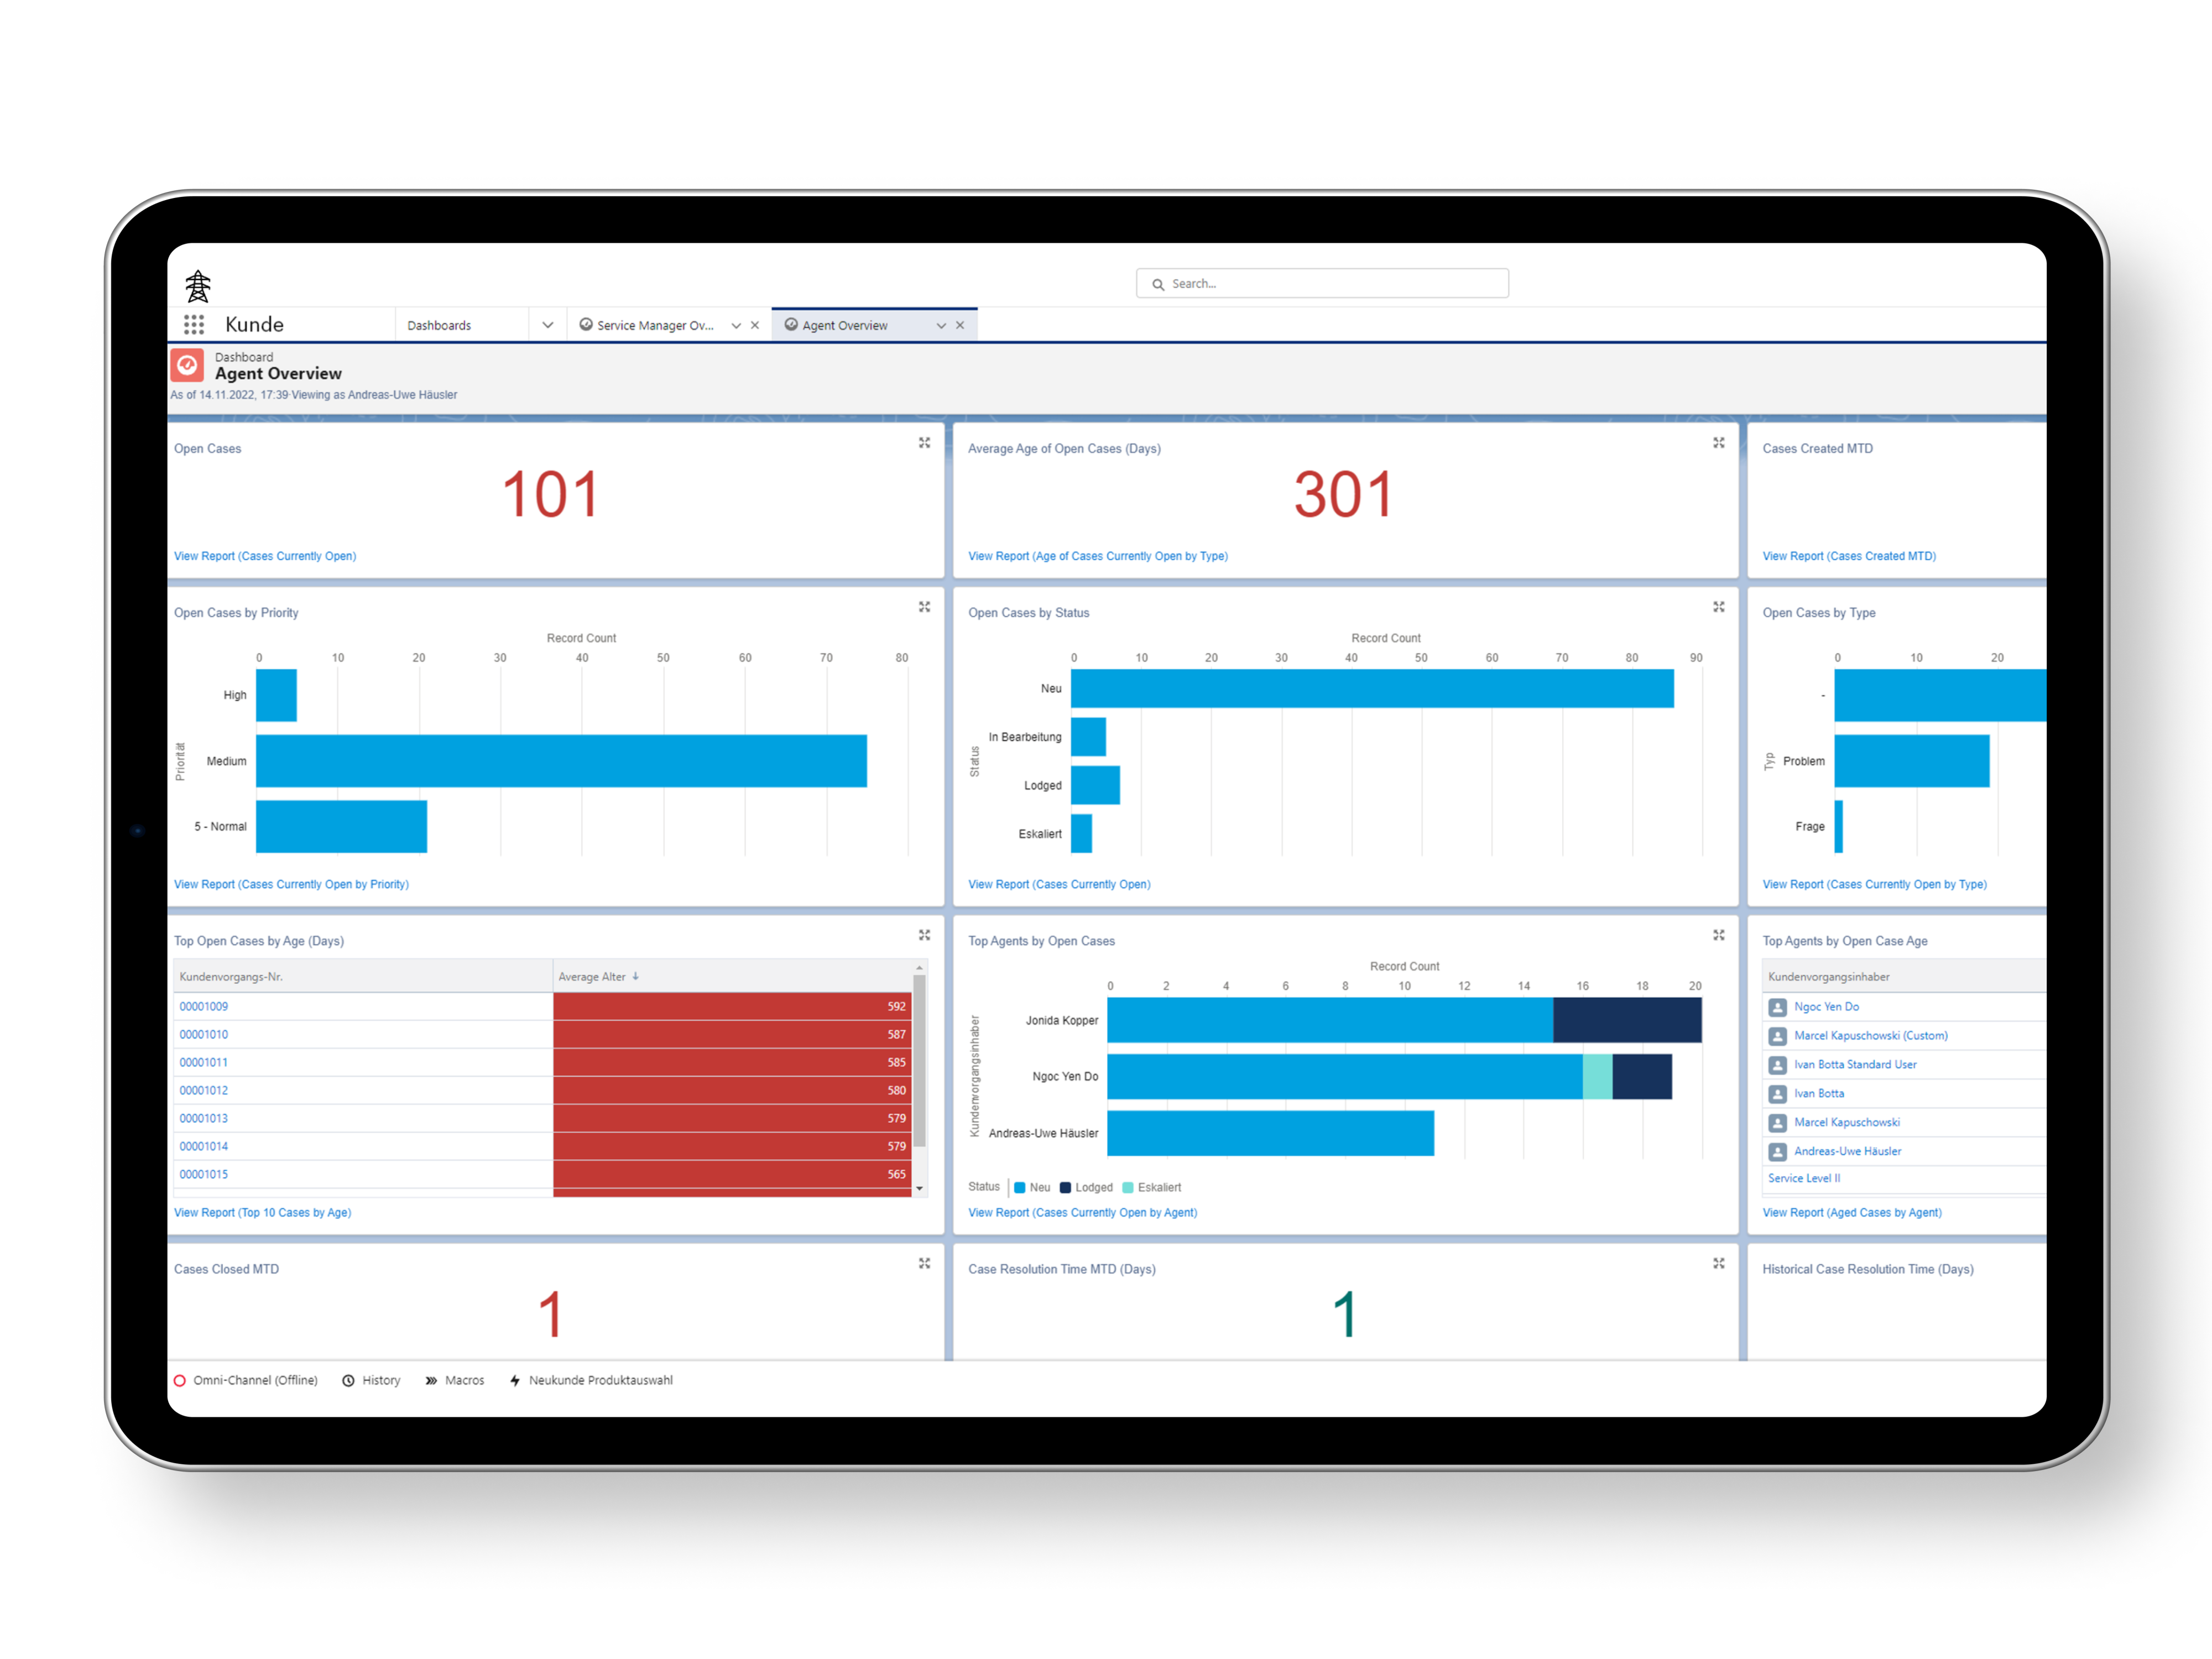 Der Screenshot zeigt ein Salesforce Dashboard mit Visualisierungen verschiedener KPIs im Kundenservice-Bereich. Bsp. sind Anzahl open Cases, Gruppierung open Cases nach Priorität & Status, TOP Cases, TOP Agents.